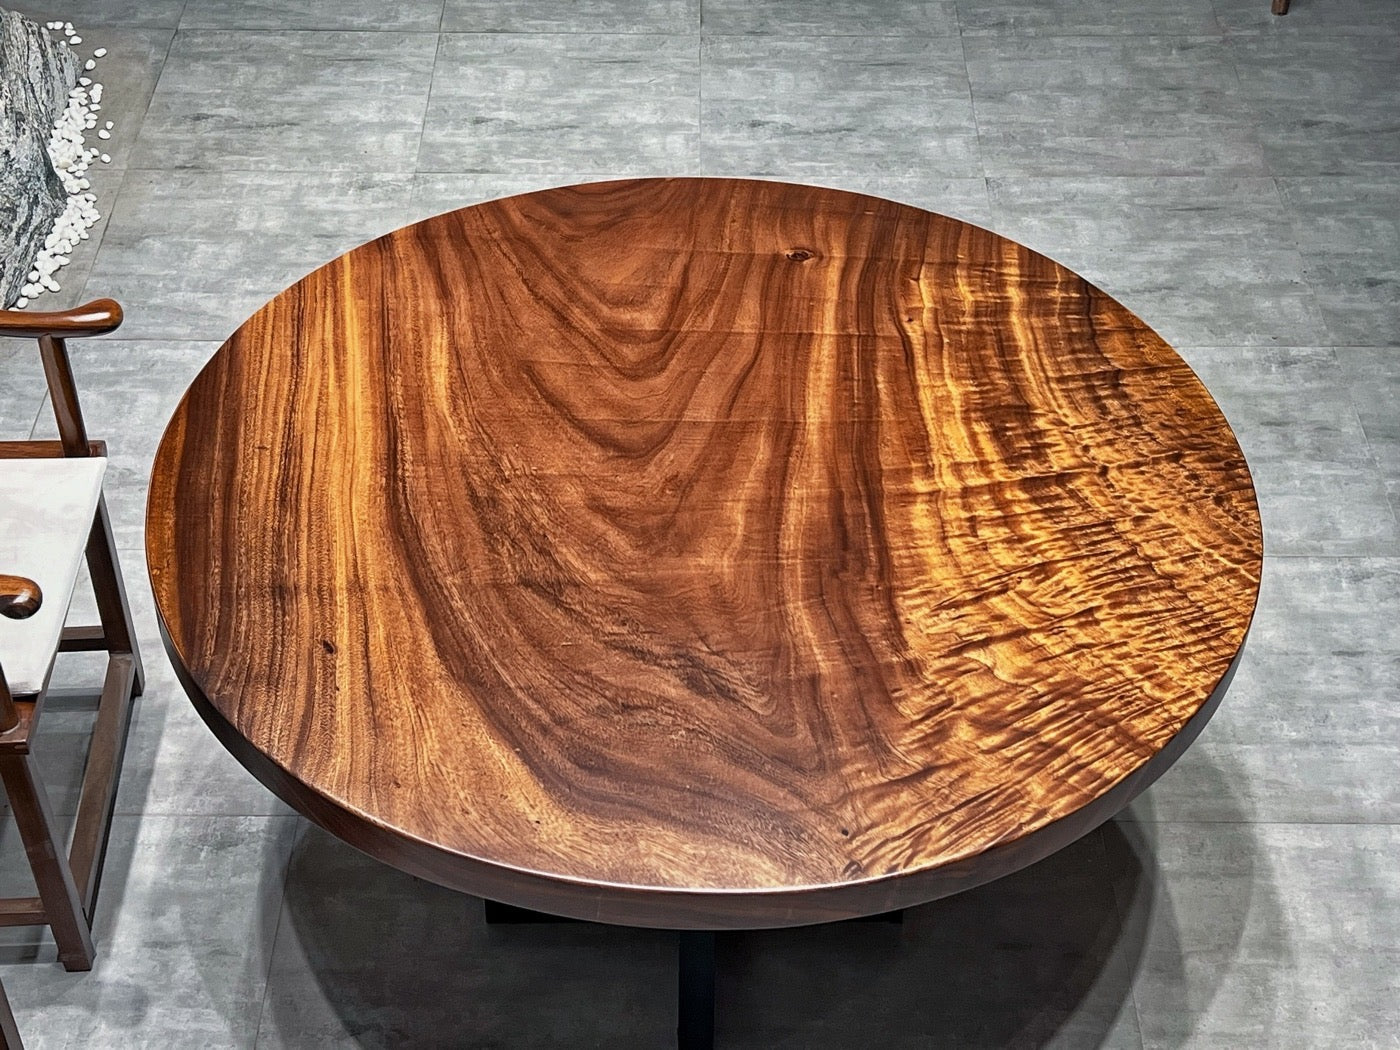 طاولة مستديرة من الخشب الداكن، طاولة مستديرة من الخشب العتيق، طاولة مستديرة من الخشب الصلب، طاولة مستديرة من خشب الكرز